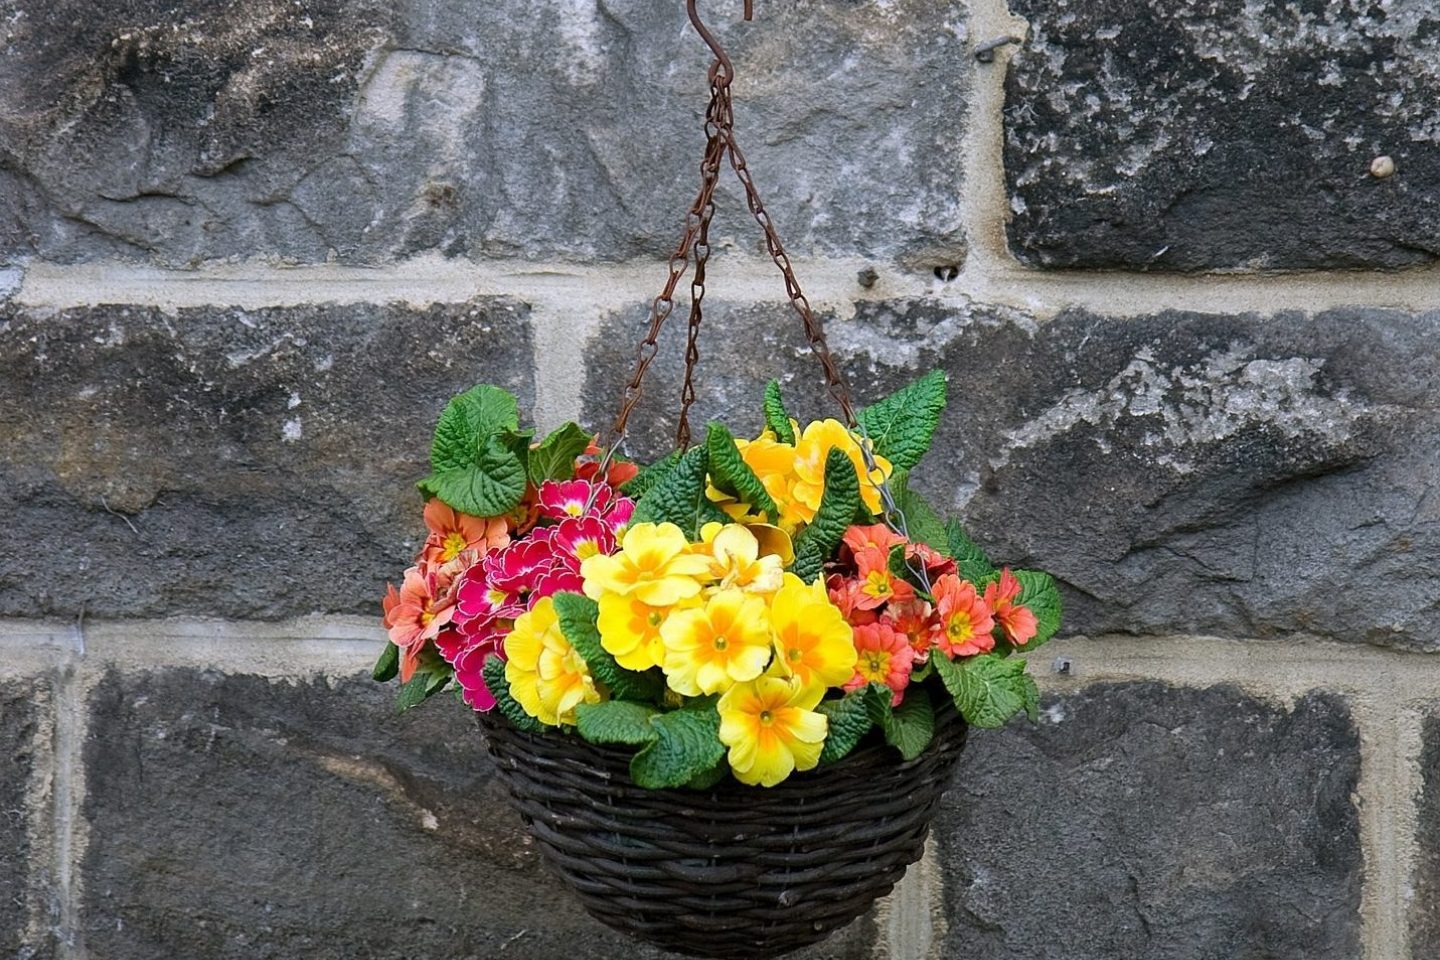 Hanging basket flowers 15233 1920